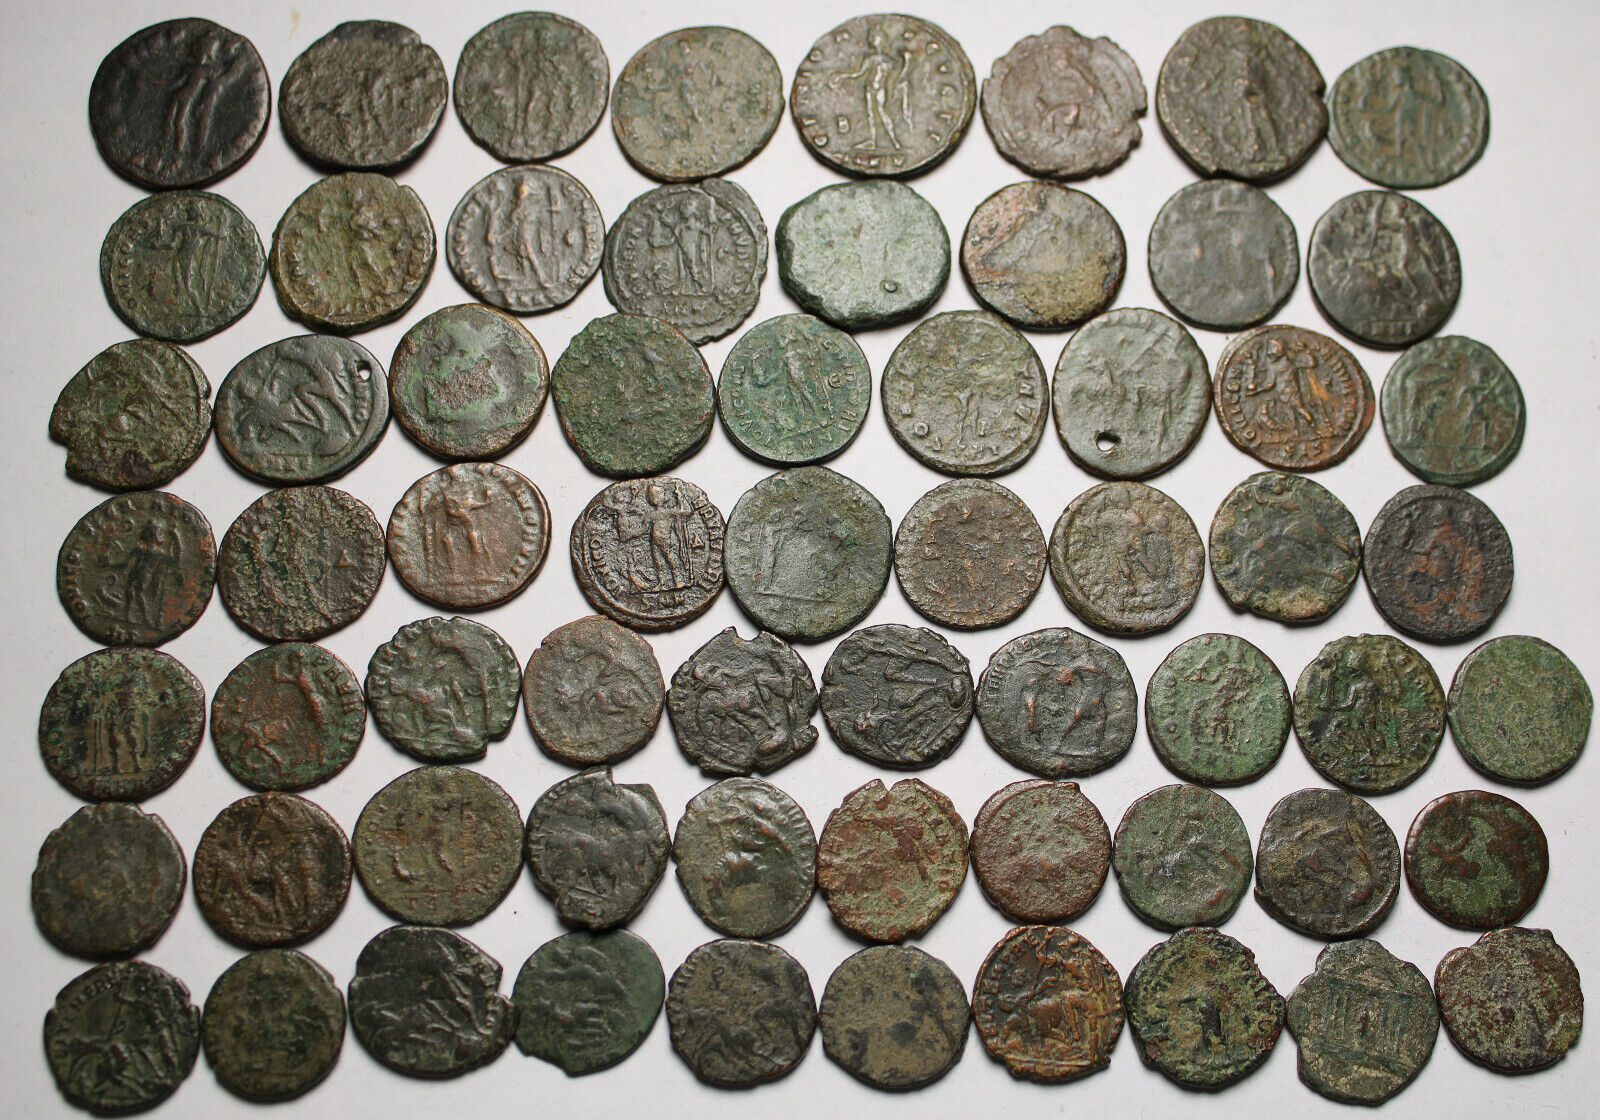 Lot of 3 large coins Rare original Ancient Roman Constantius Licinius Maximianus Без бренда - фотография #8